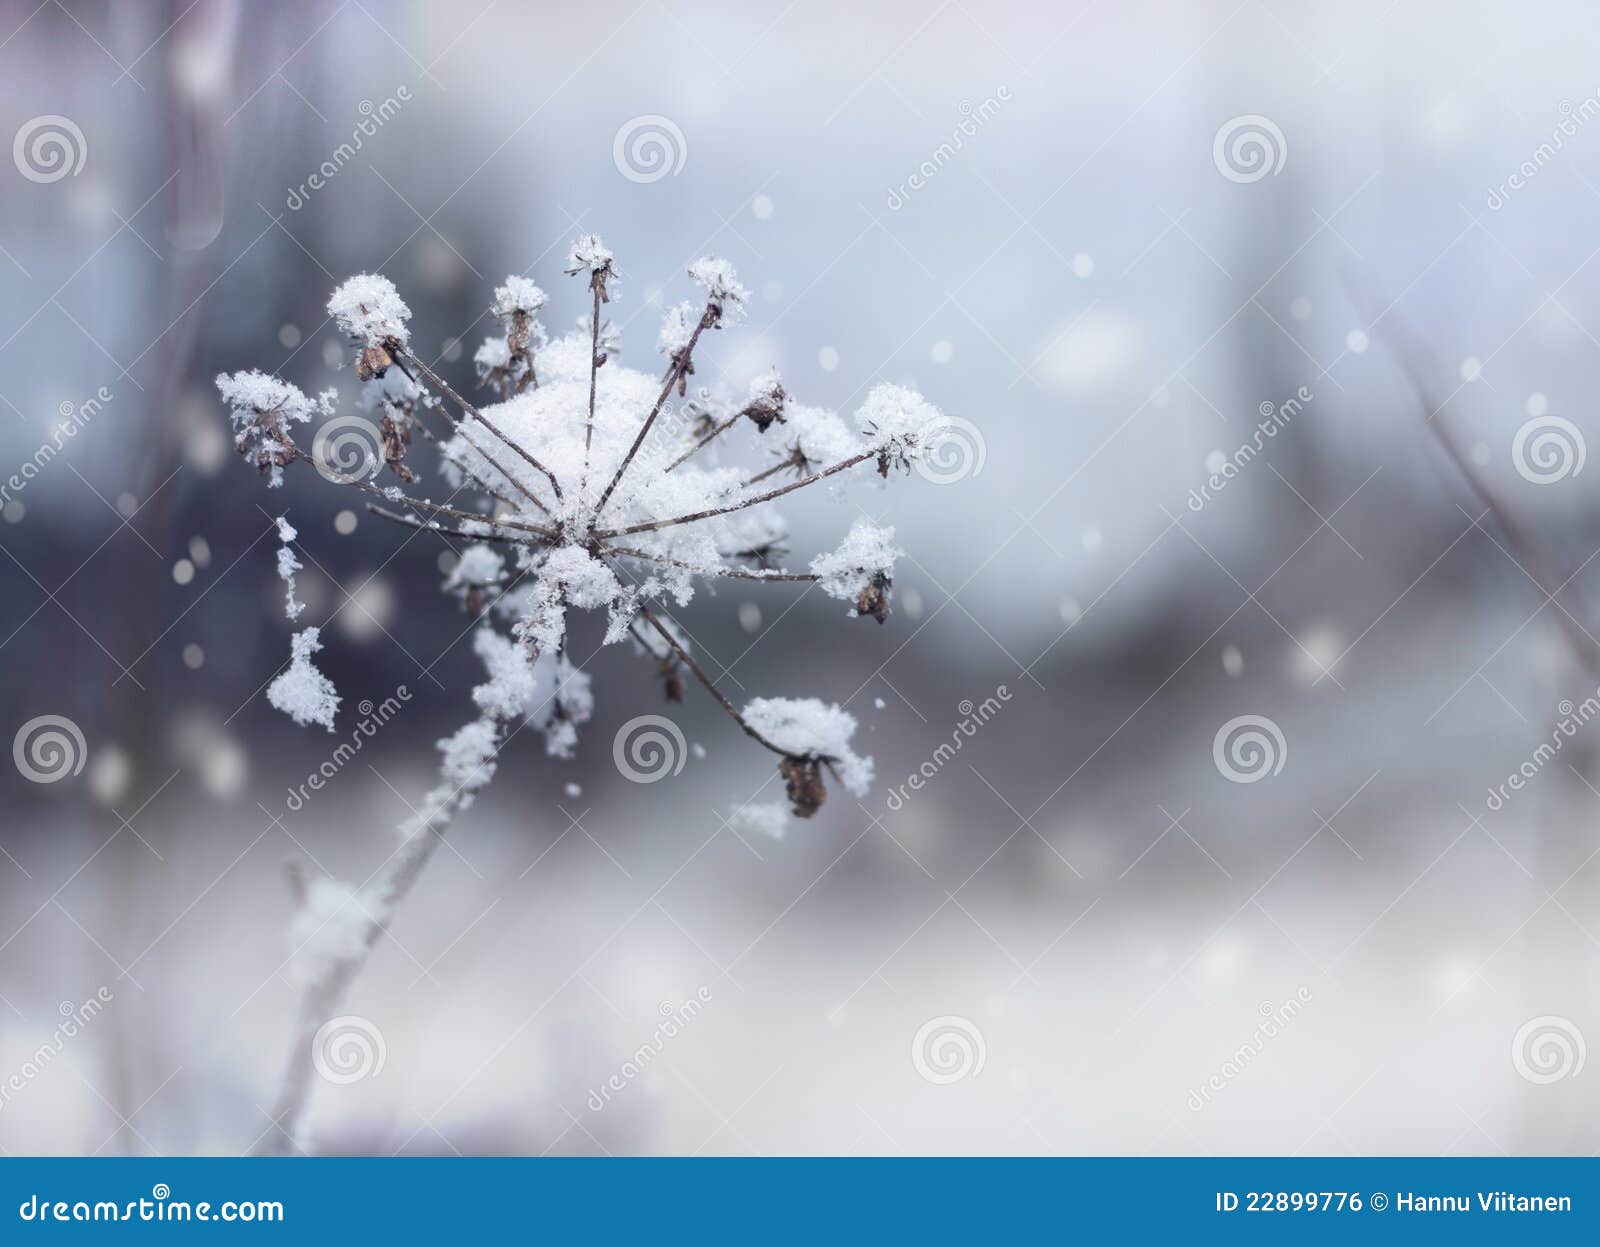 frozen flower twig in winter snowfall